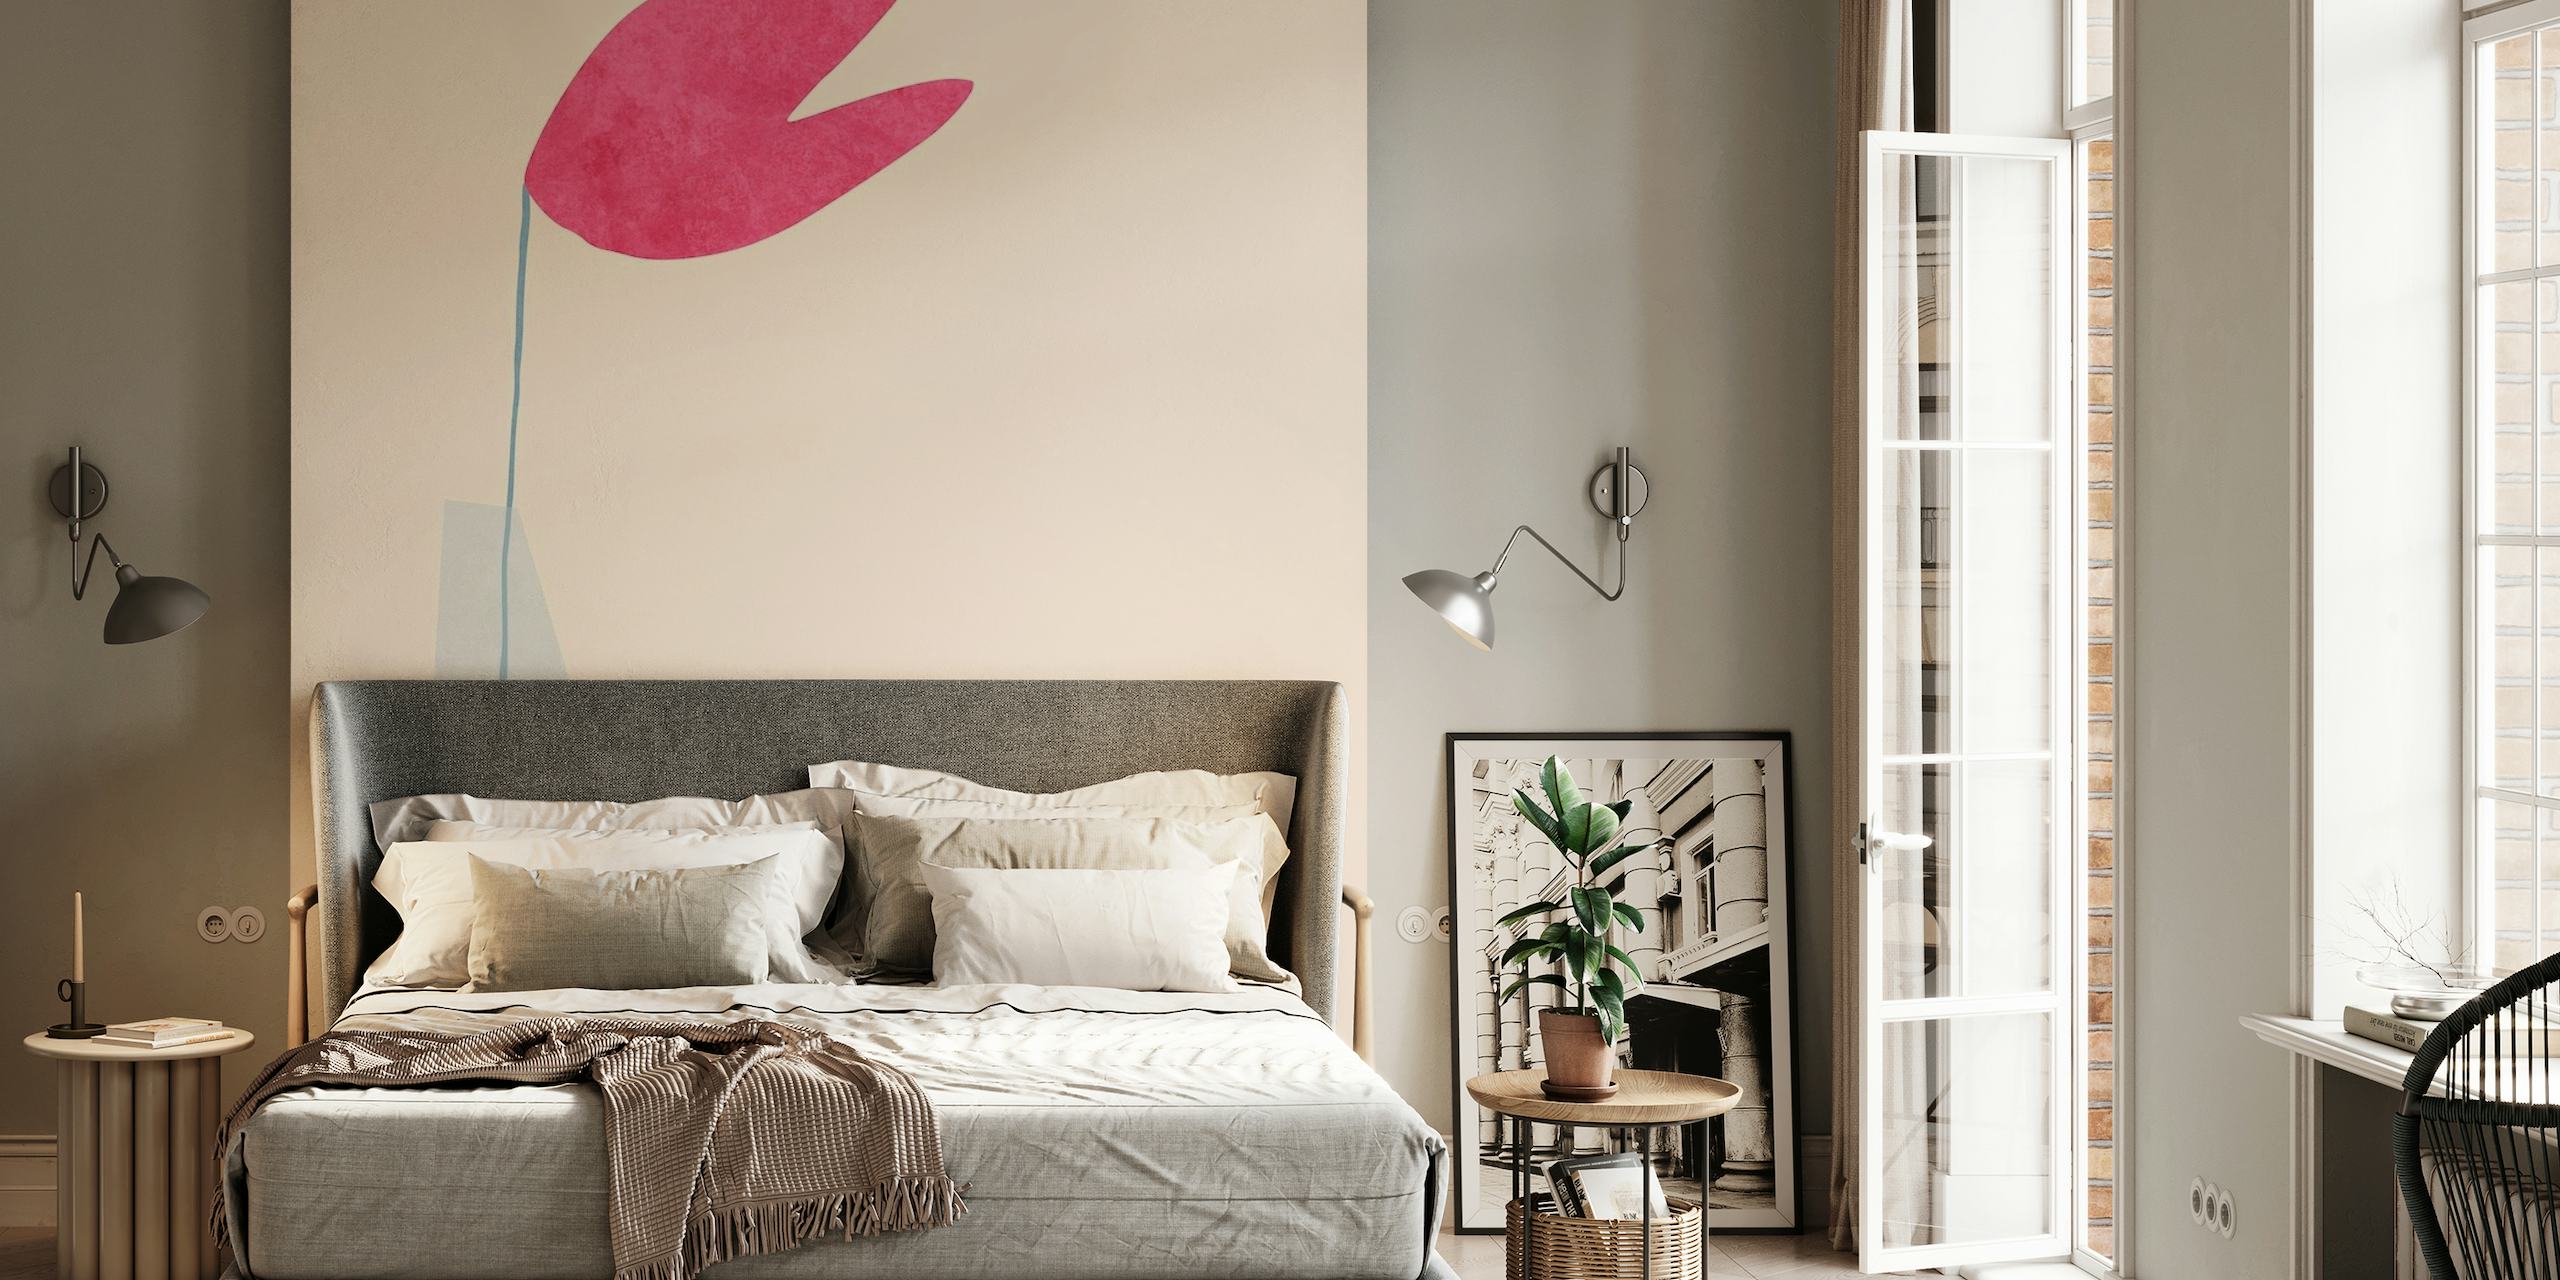 Apstraktni minimalistički zidni mural ružičastog oblika srca u ravnoteži na vitkom obliku s pastelnom pozadinom